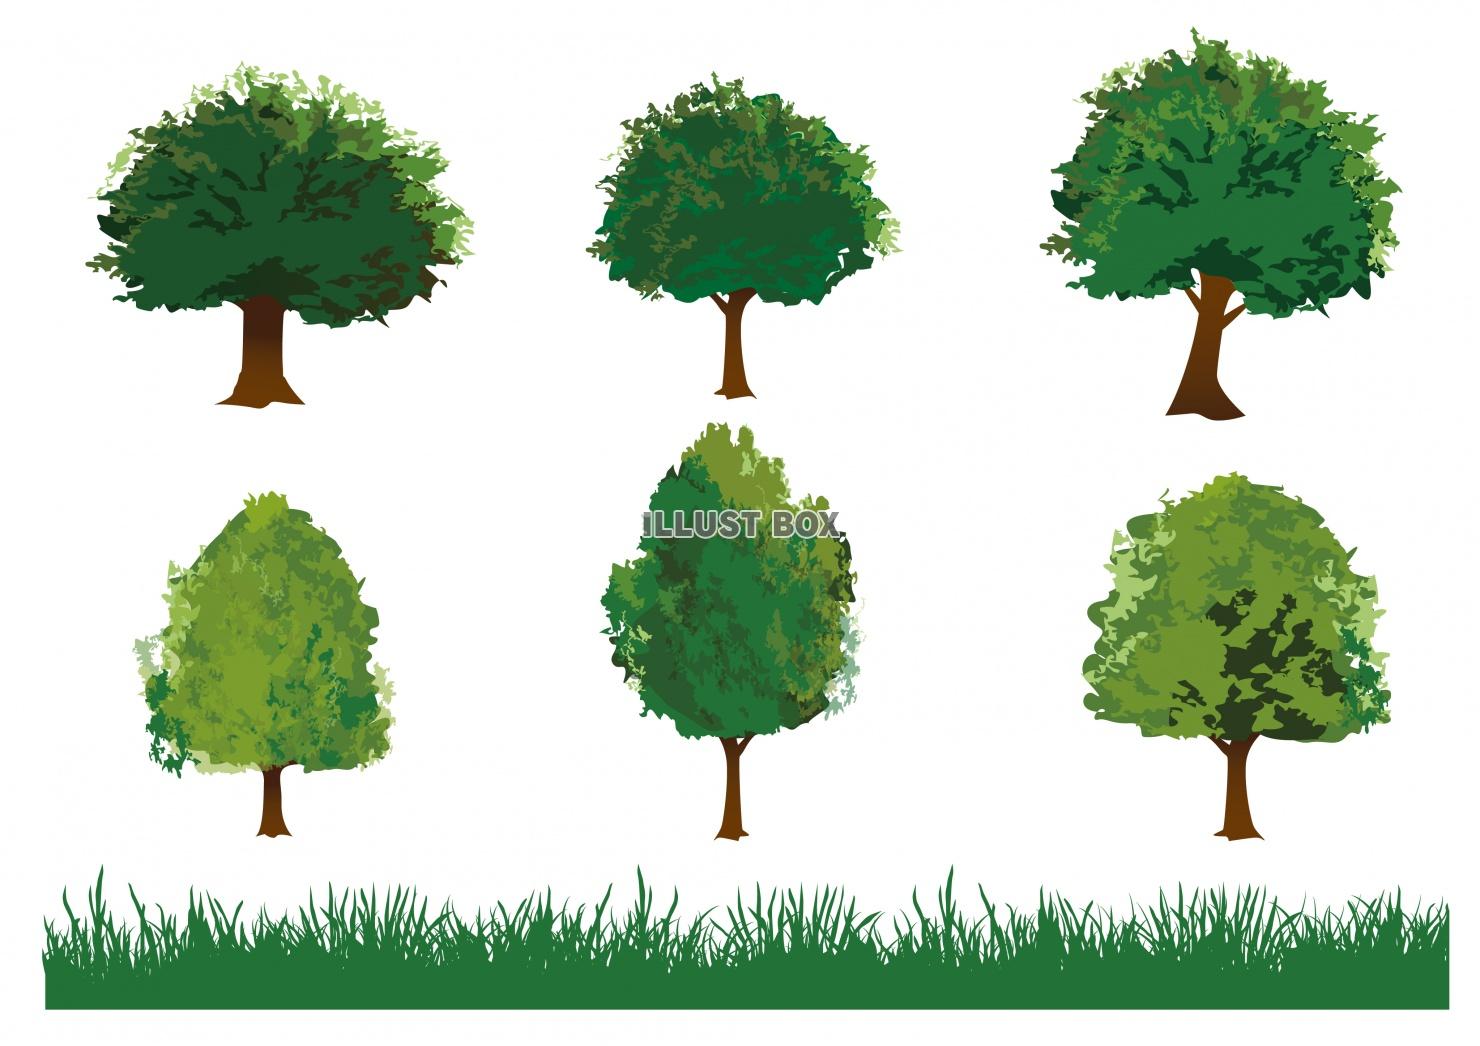 無料イラスト 水彩風の木と草のイラストセット